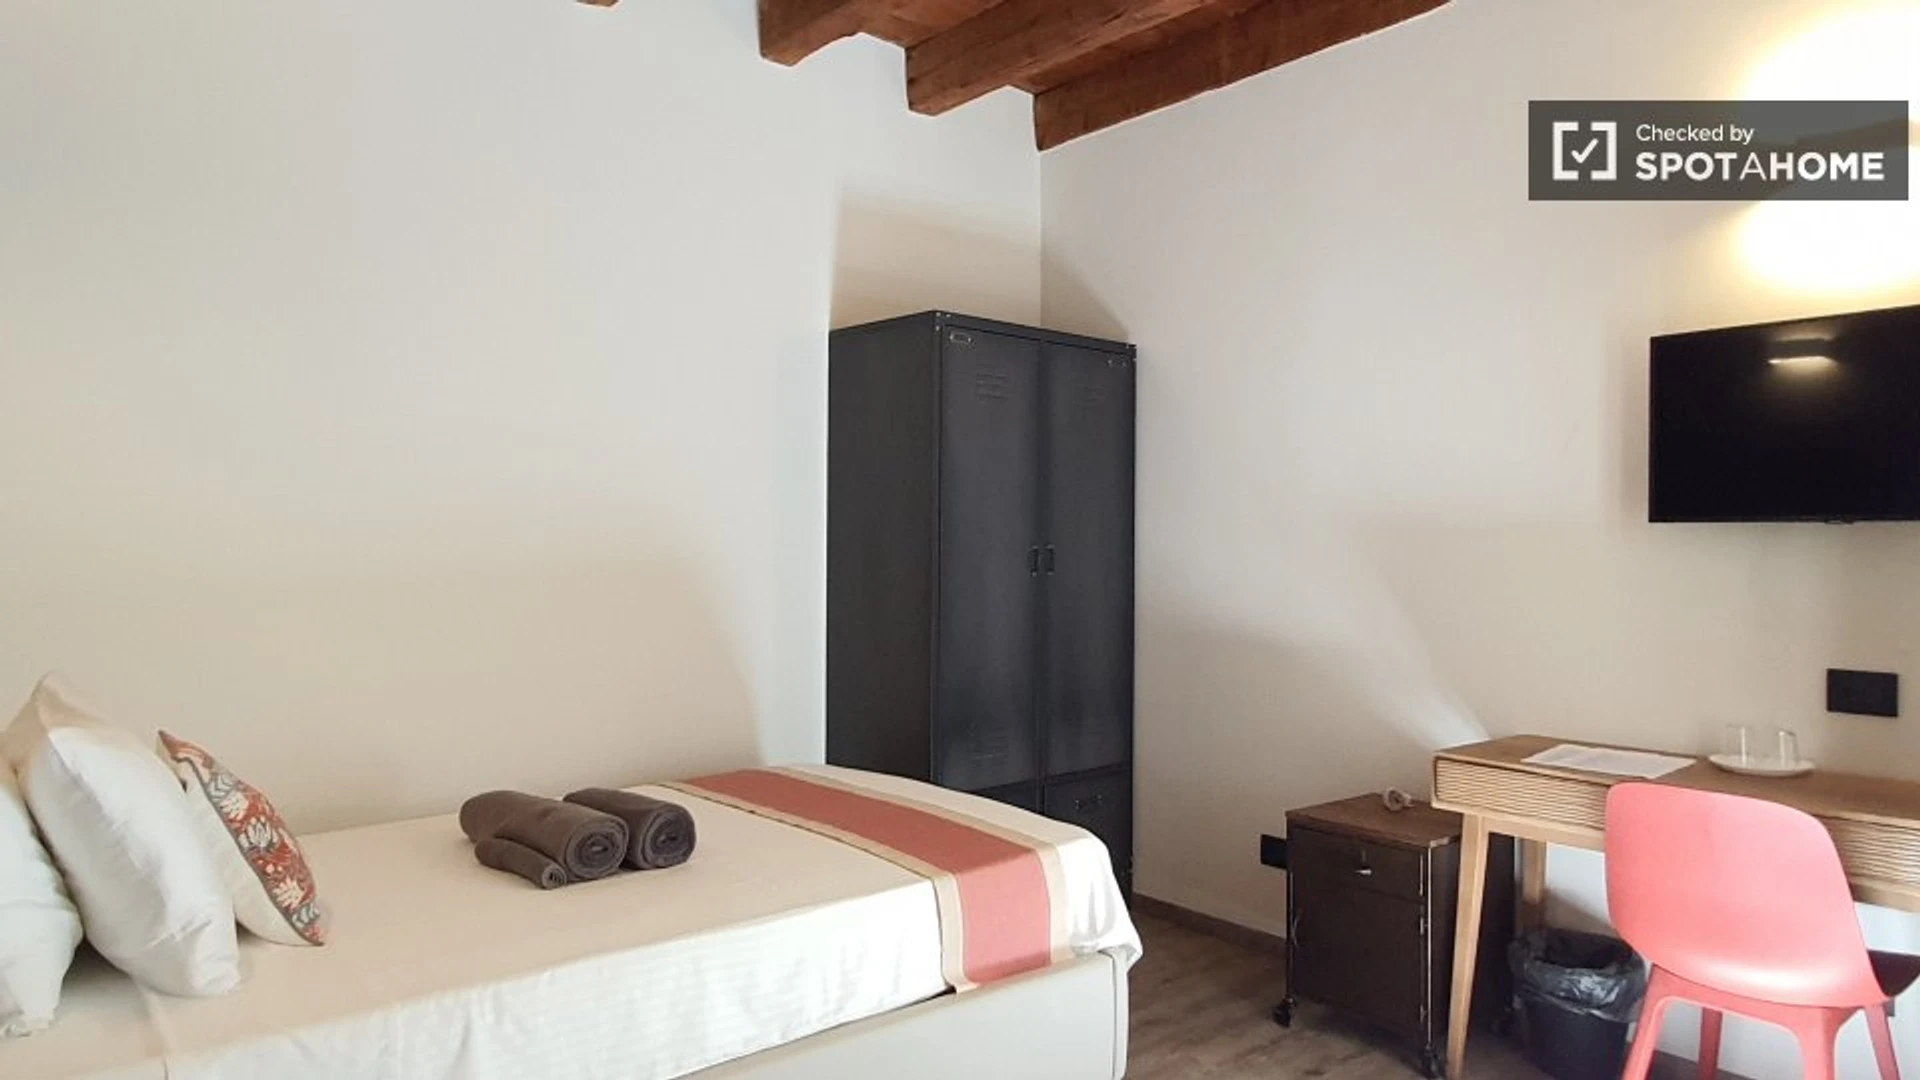 Brescia de çift kişilik yataklı kiralık oda